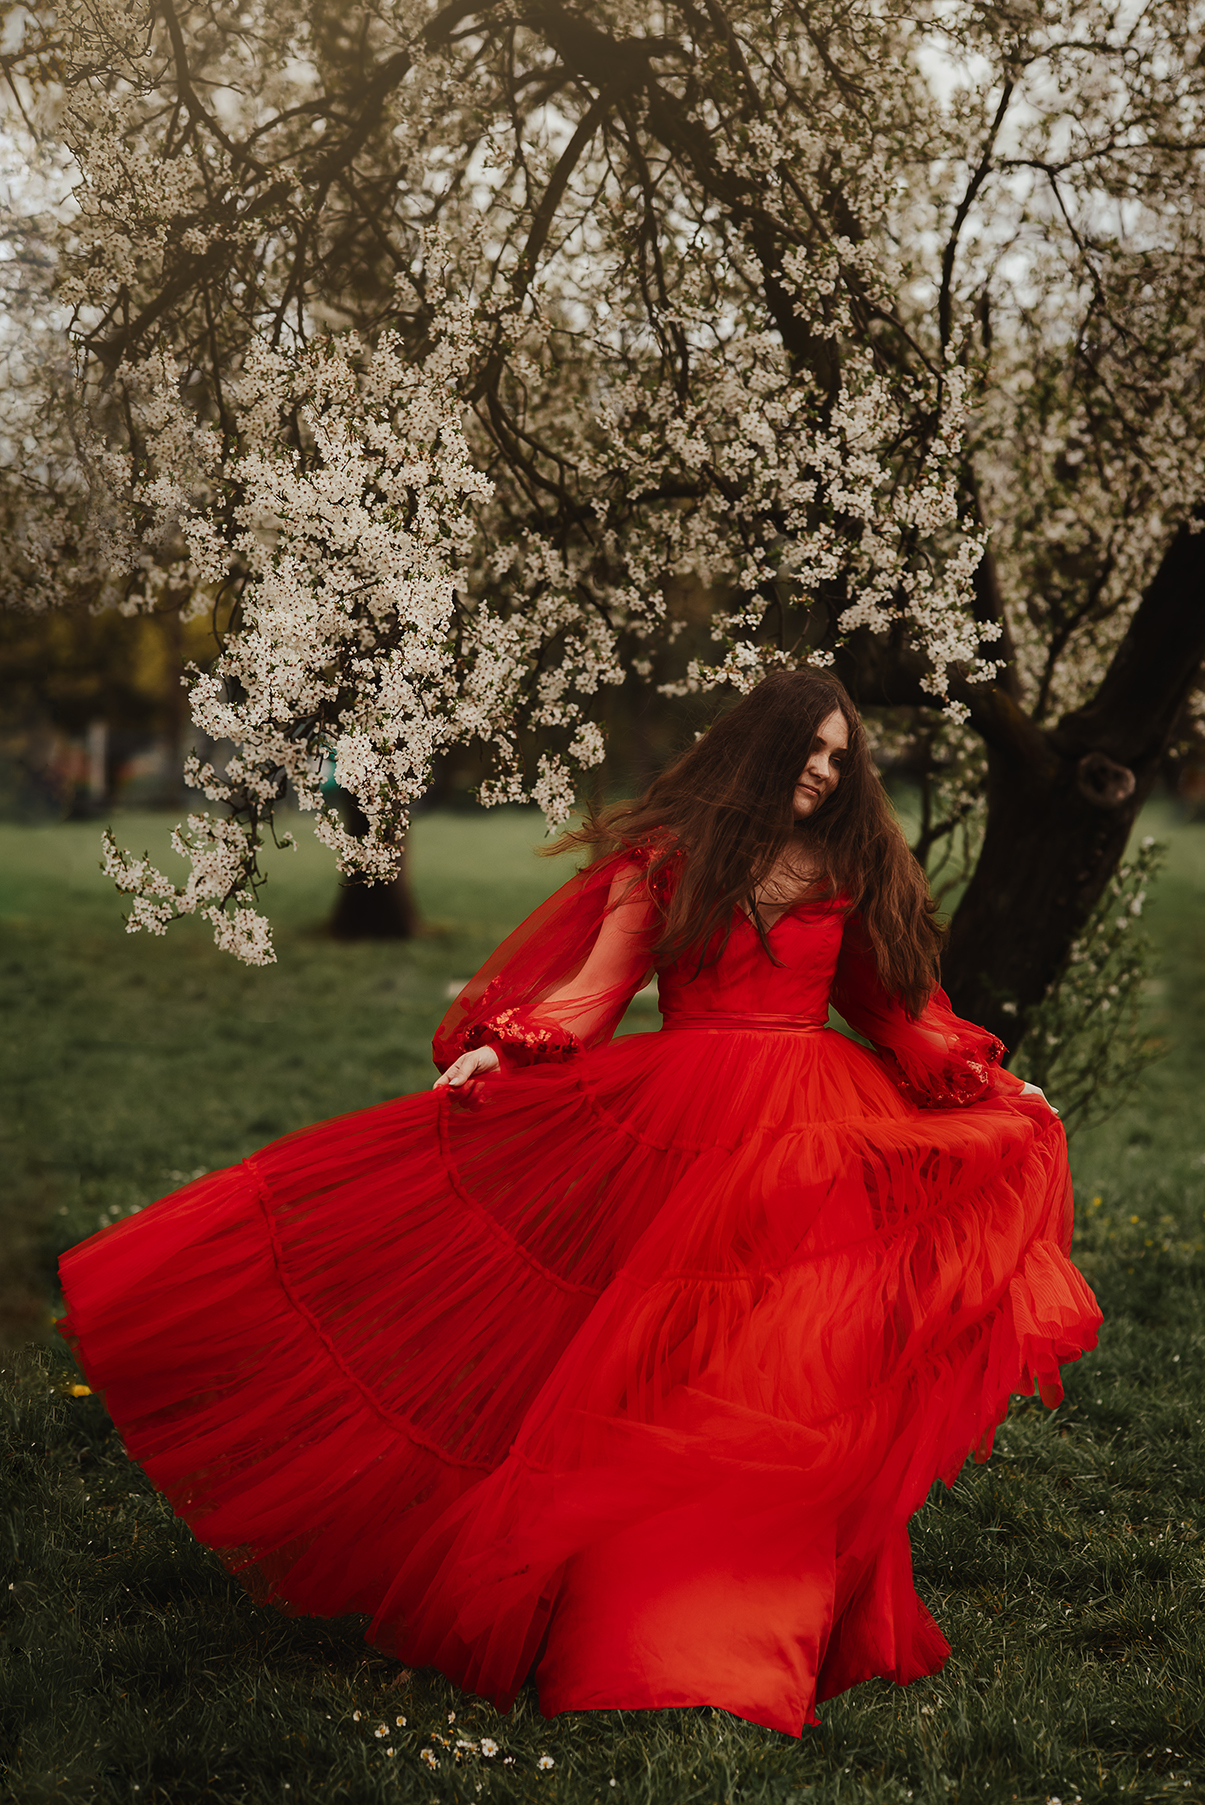 bajkowa sesja zdjęciowa czerwona sukienka